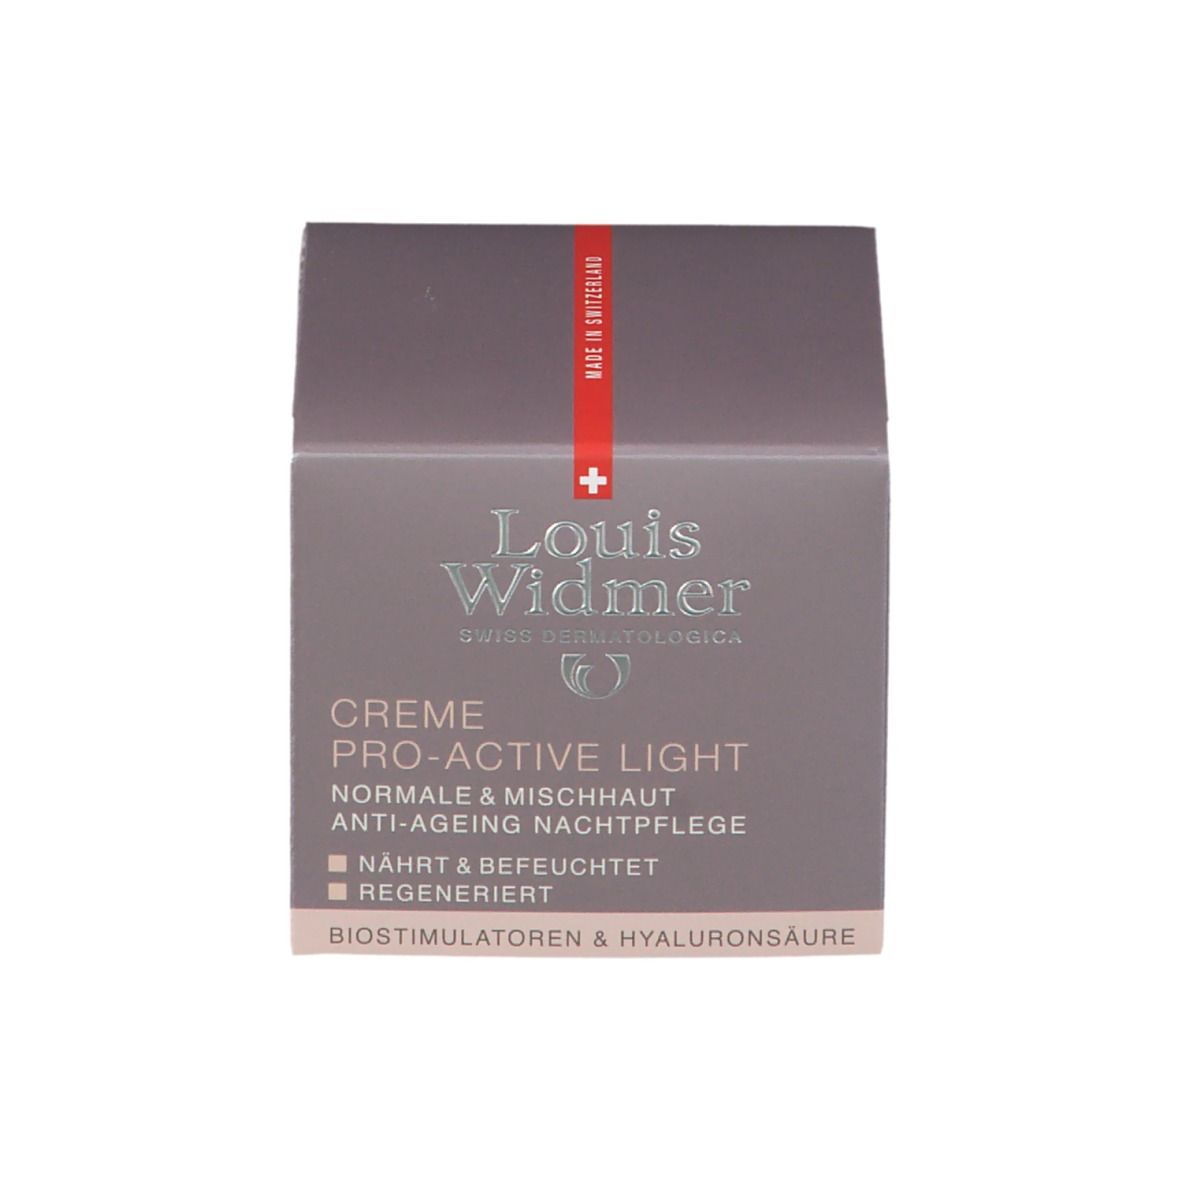 Louis Widmer Creme Pro-Active Light leicht parfümiert